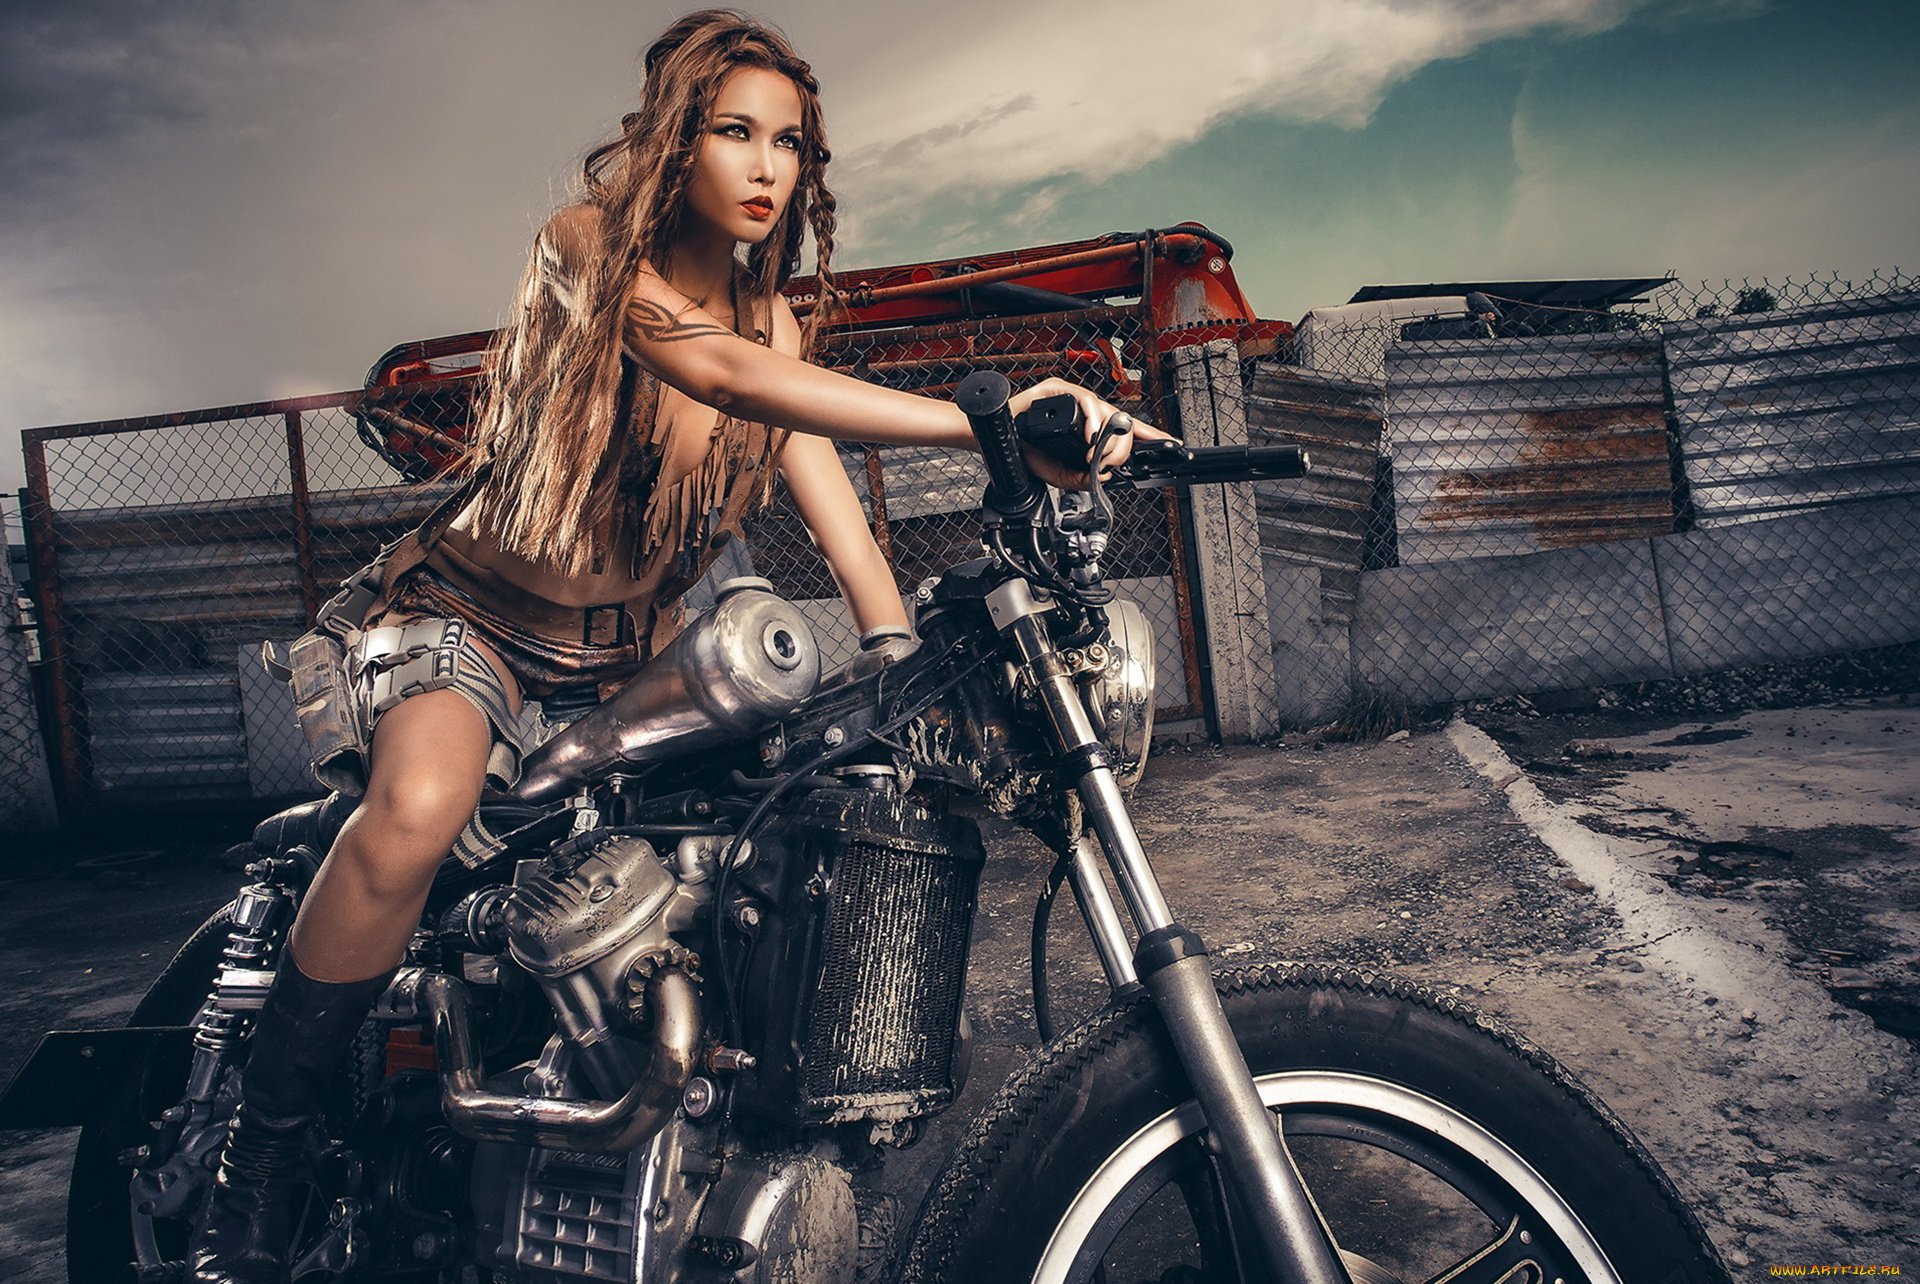 мотоциклы, мото, с, девушкой, девушка, мотоцикл, bike, модель, шатенка, красотка, поза, взгляд, макияж